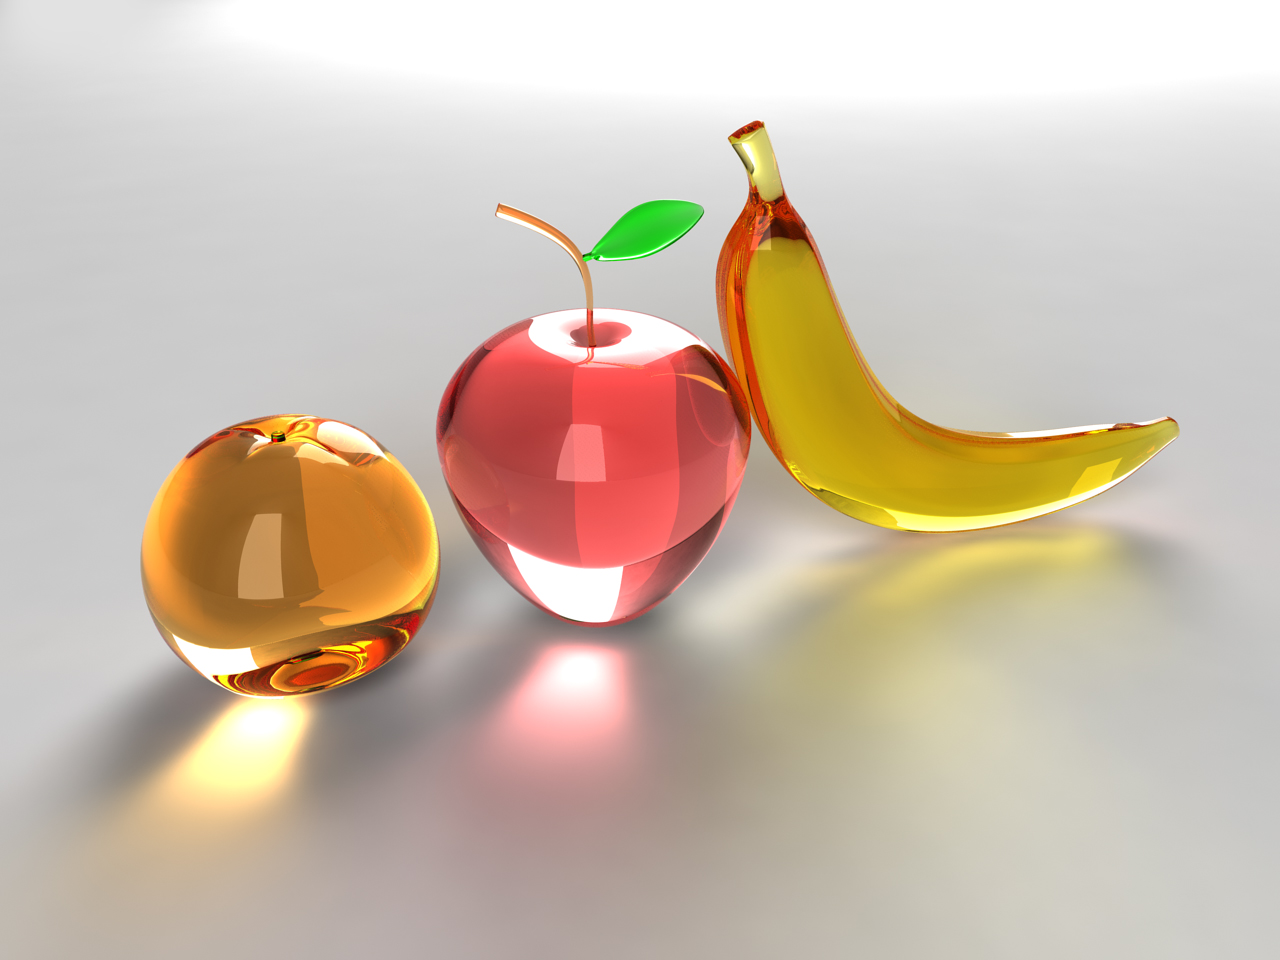 apple, orange (fruit), glass, food, banana, fruit Full HD